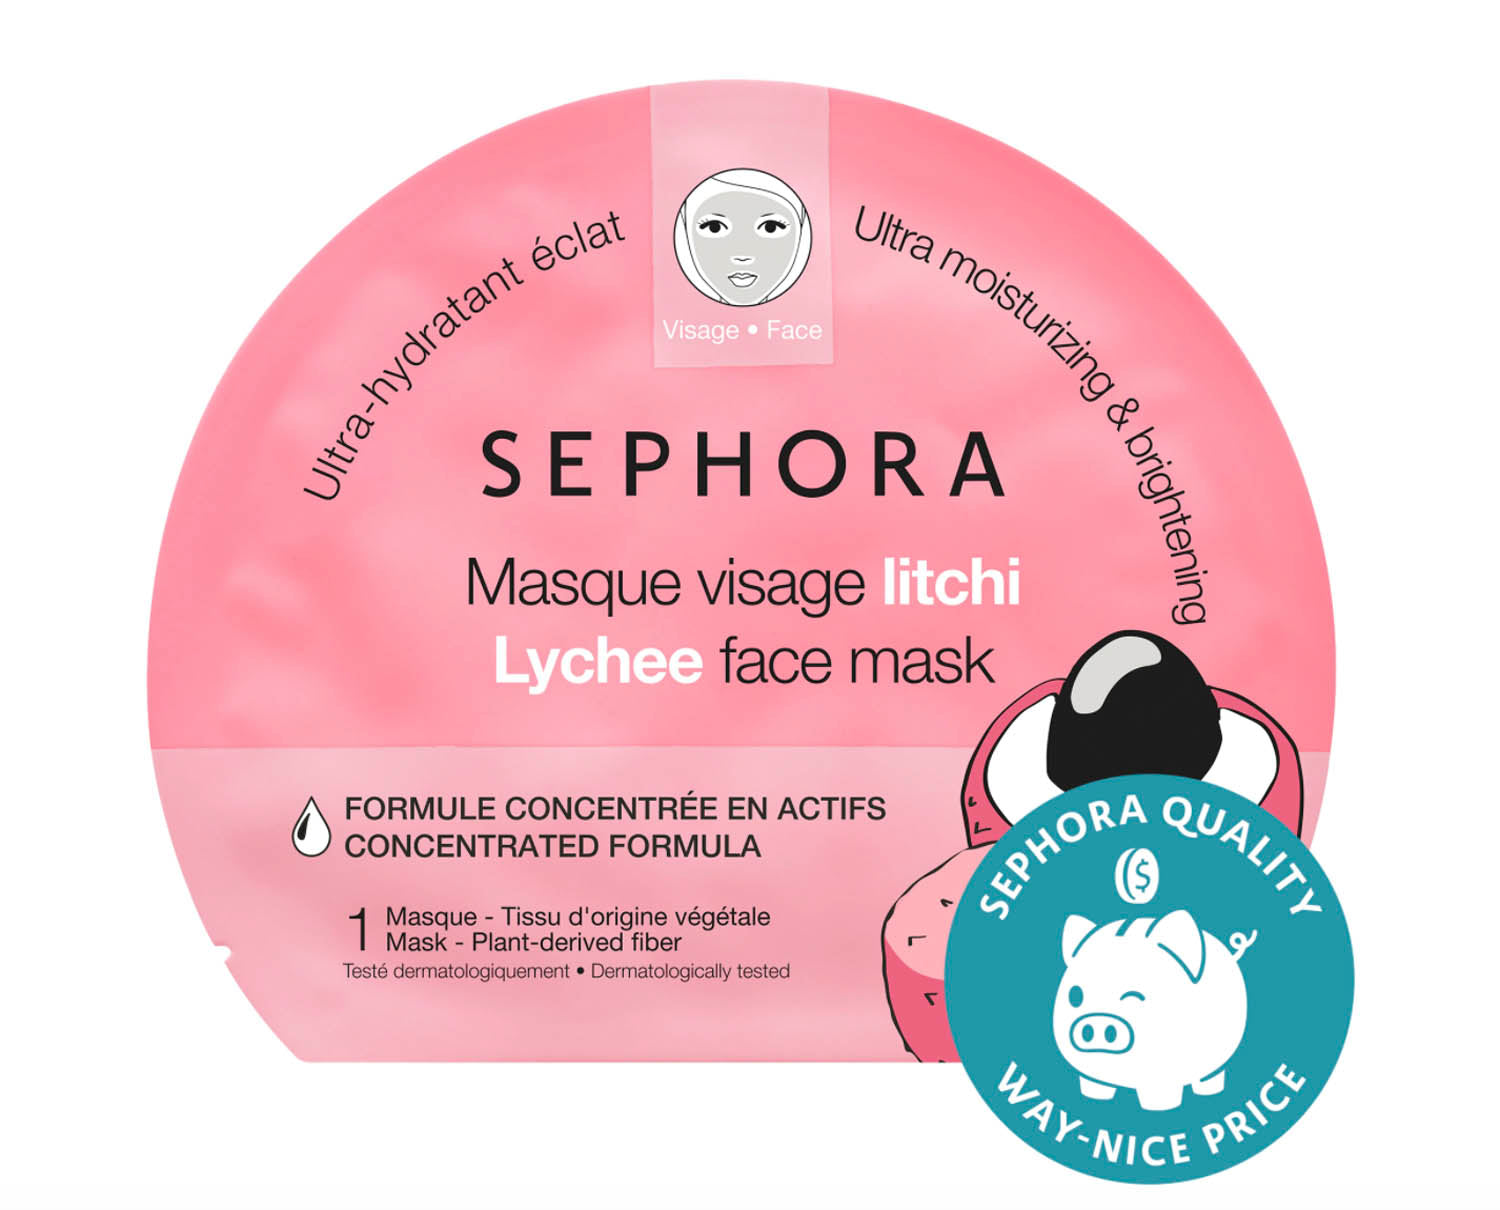 Sephora mask product